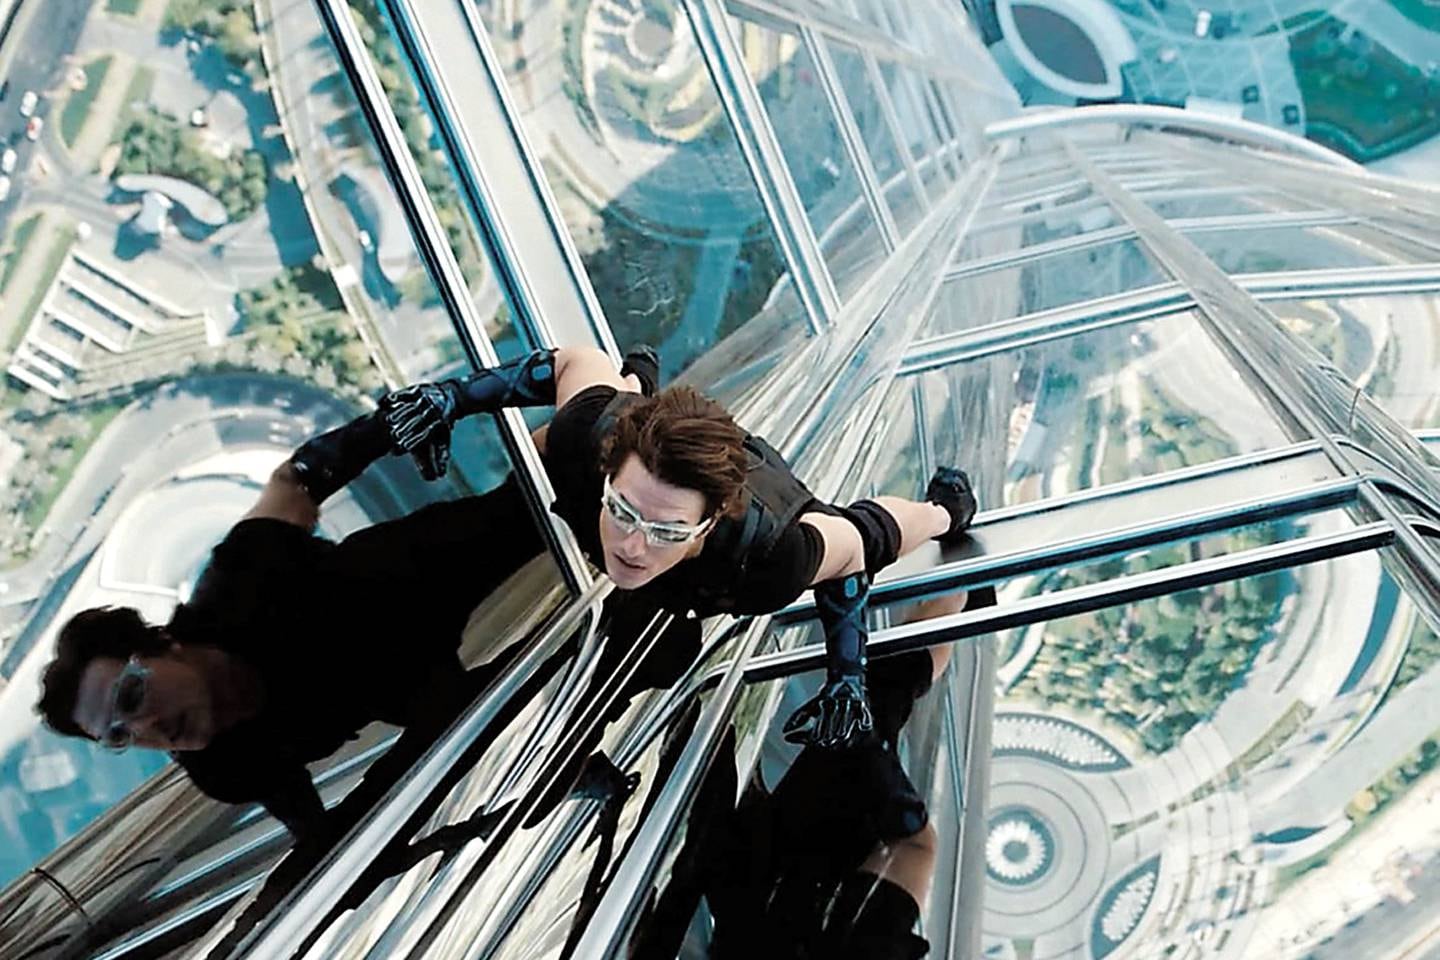 E05111102.JPG
MÉXICO, D.F., Film-Cine-Misión Imposible 4 .- Tom Cruise, encarnando al agente Ethan Hunt, se lanza desde el edificio más alto del mundo: el Bhutj Kalifa, de Dubai. Esta es una de las escenas más impactantes que se verán en “Misión Imposible 4: El protocolo fantasma”. RDB. Foto: Especial/ Agencia EL UNIVERSAL. (GDA via AP Images)